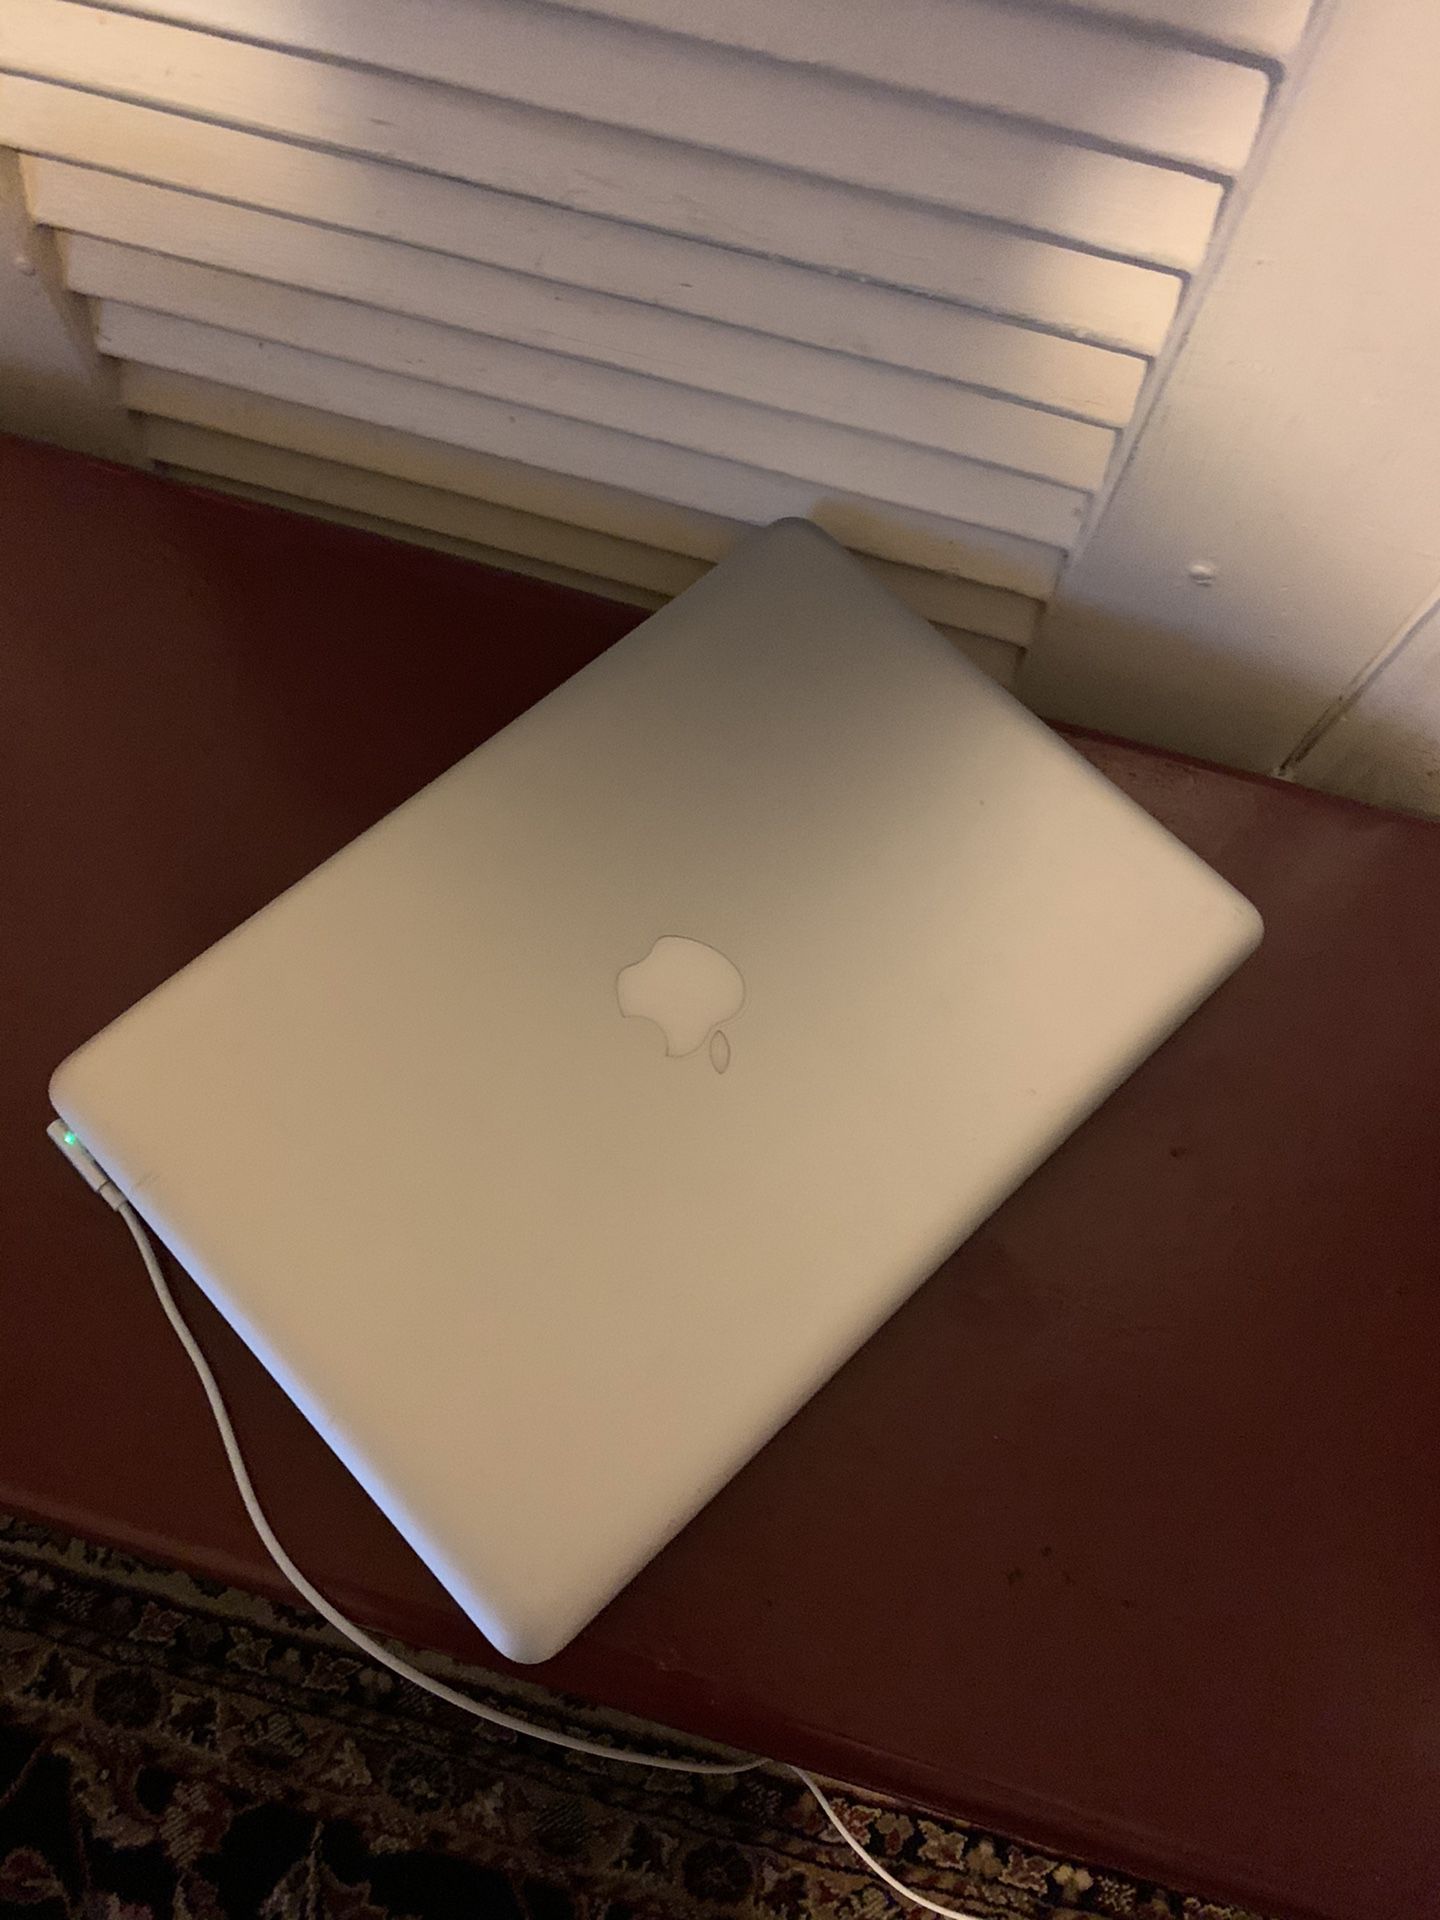 2010 Macbook Pro